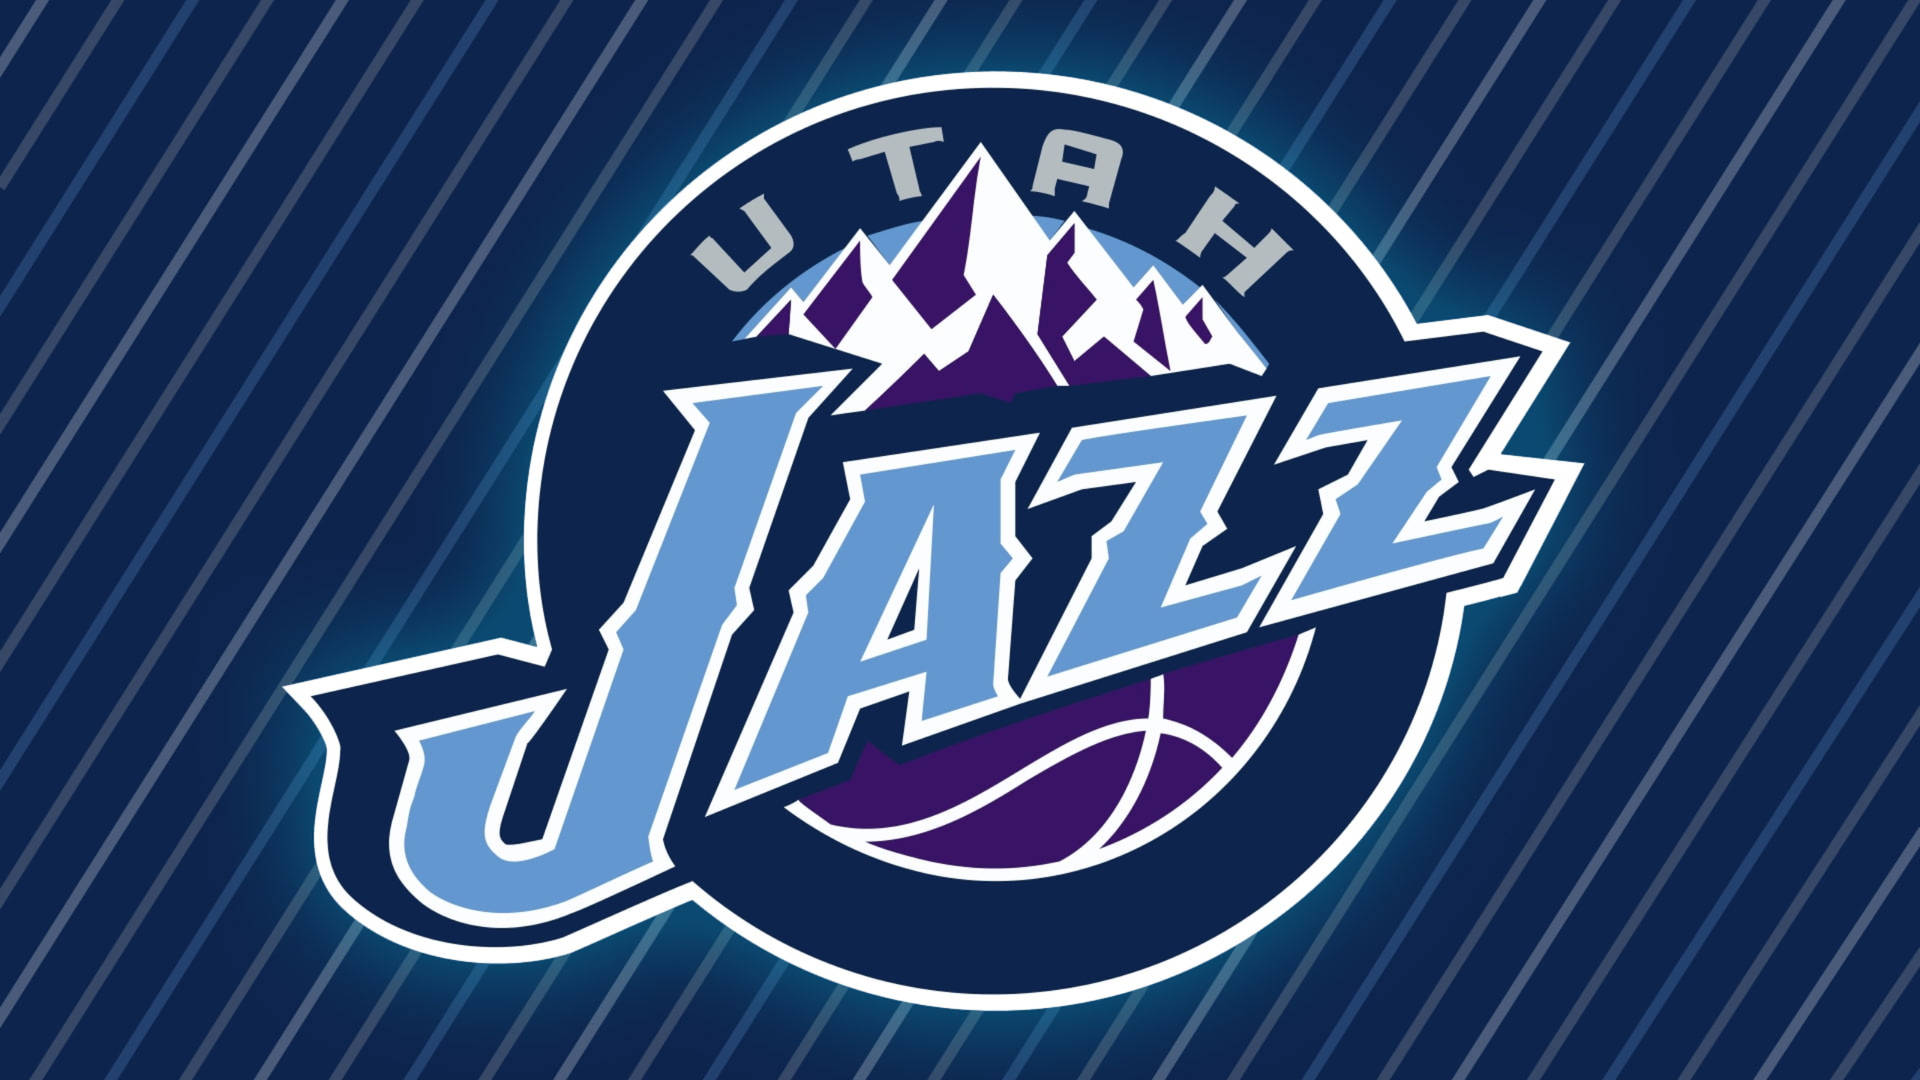 Utah Jazz In Blue Stripes